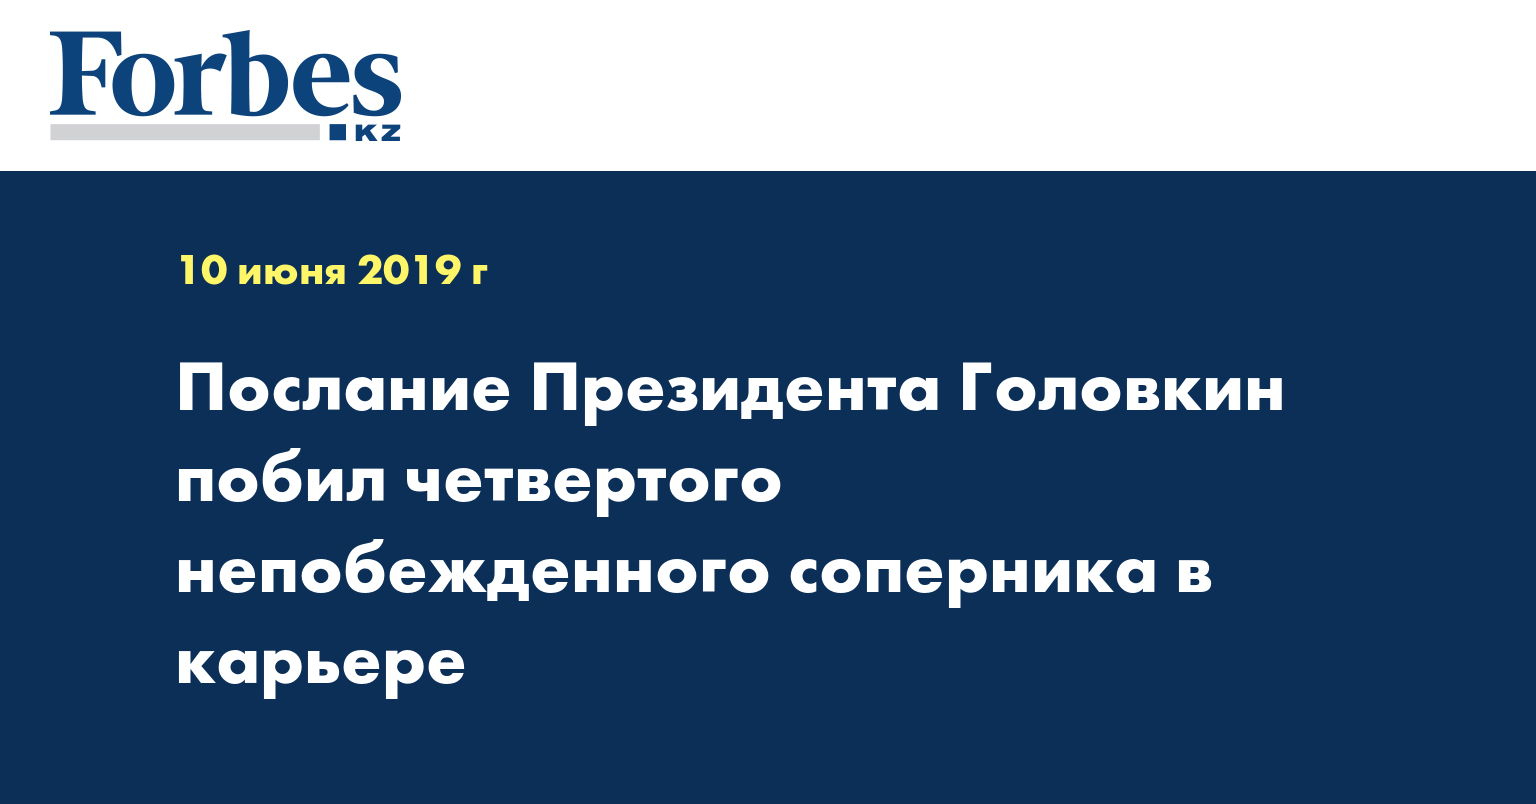 Послание Президента Головкин побил четвертого непобежденного соперника в карьере